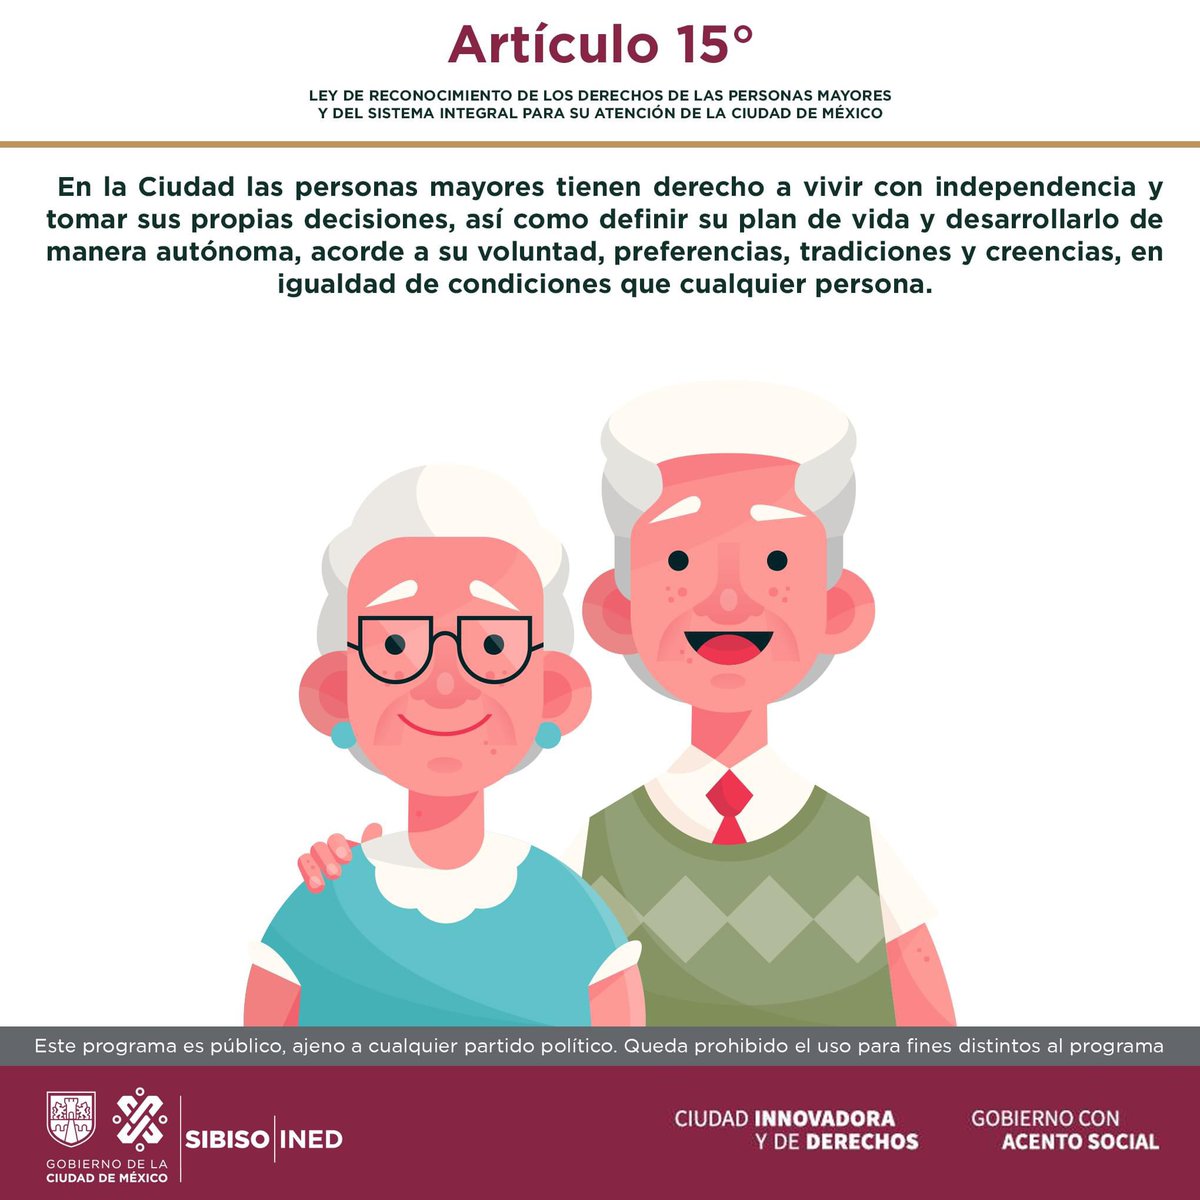 🔴 “El envejecimiento parece ser la única forma disponible para vivir una bella vida”. 👩‍🦳❤️👨‍🦳
-artículo 15° Ley de Reconocimiento de los Derechos de las Personas Mayores y del Sistema Integral para su Atención de la Ciudad de México-
#DerechosHumanos
#EnvejecimientoDigno